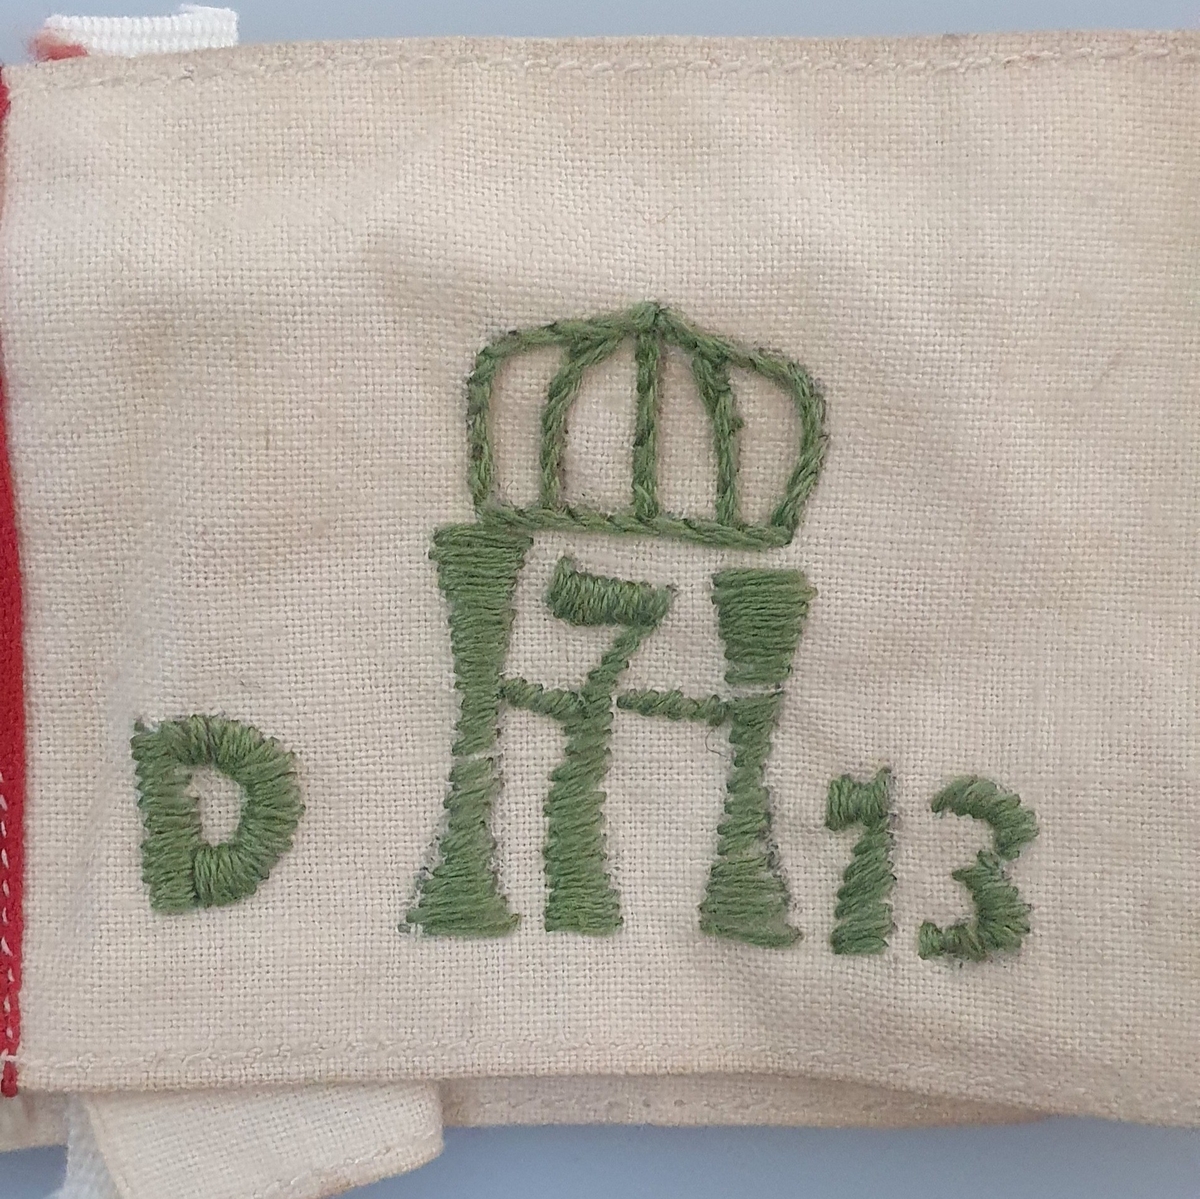 I tillegg til flaggstriper, H7-logo med krone over, og med D på venstre side og 13 på høyre side. Logoen er opprinnelige stemplet på stoffet, men deretter brodert med grønn tråd.